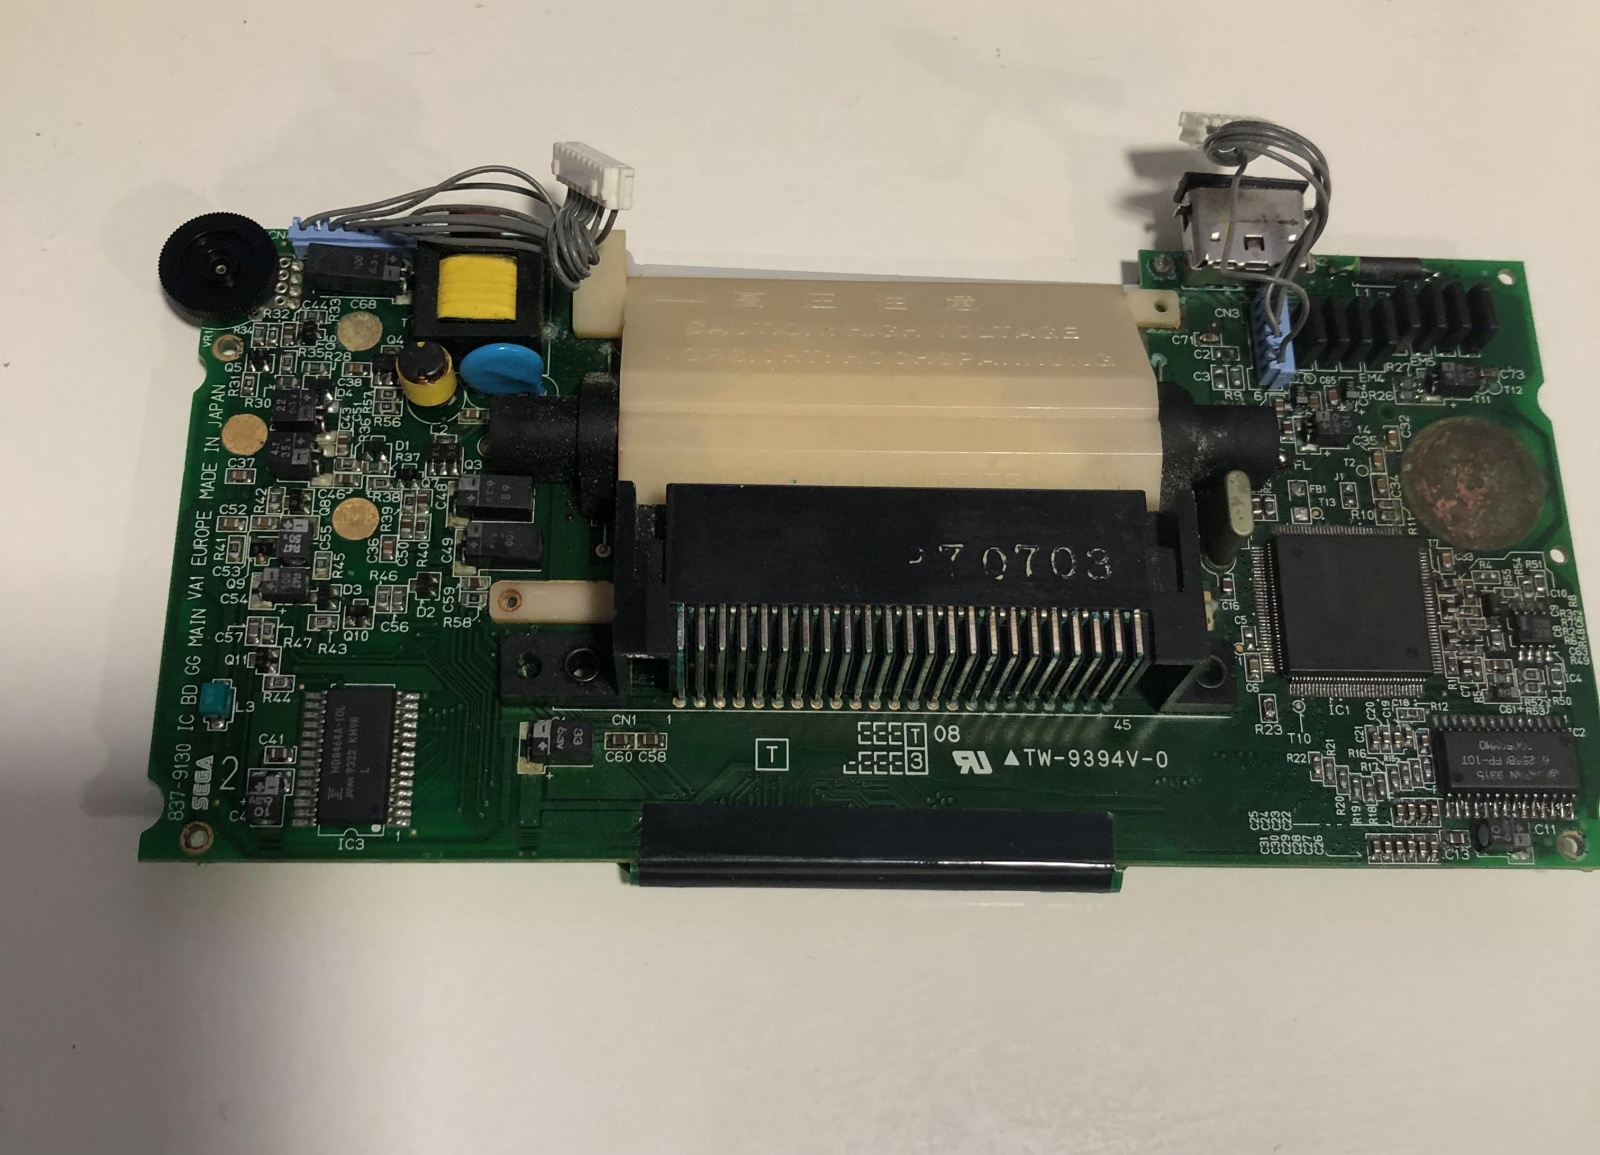 Sega Game Gear: портативная игровая консоль 90-х. Как электронный мусор превратить в работающий девайс - 7